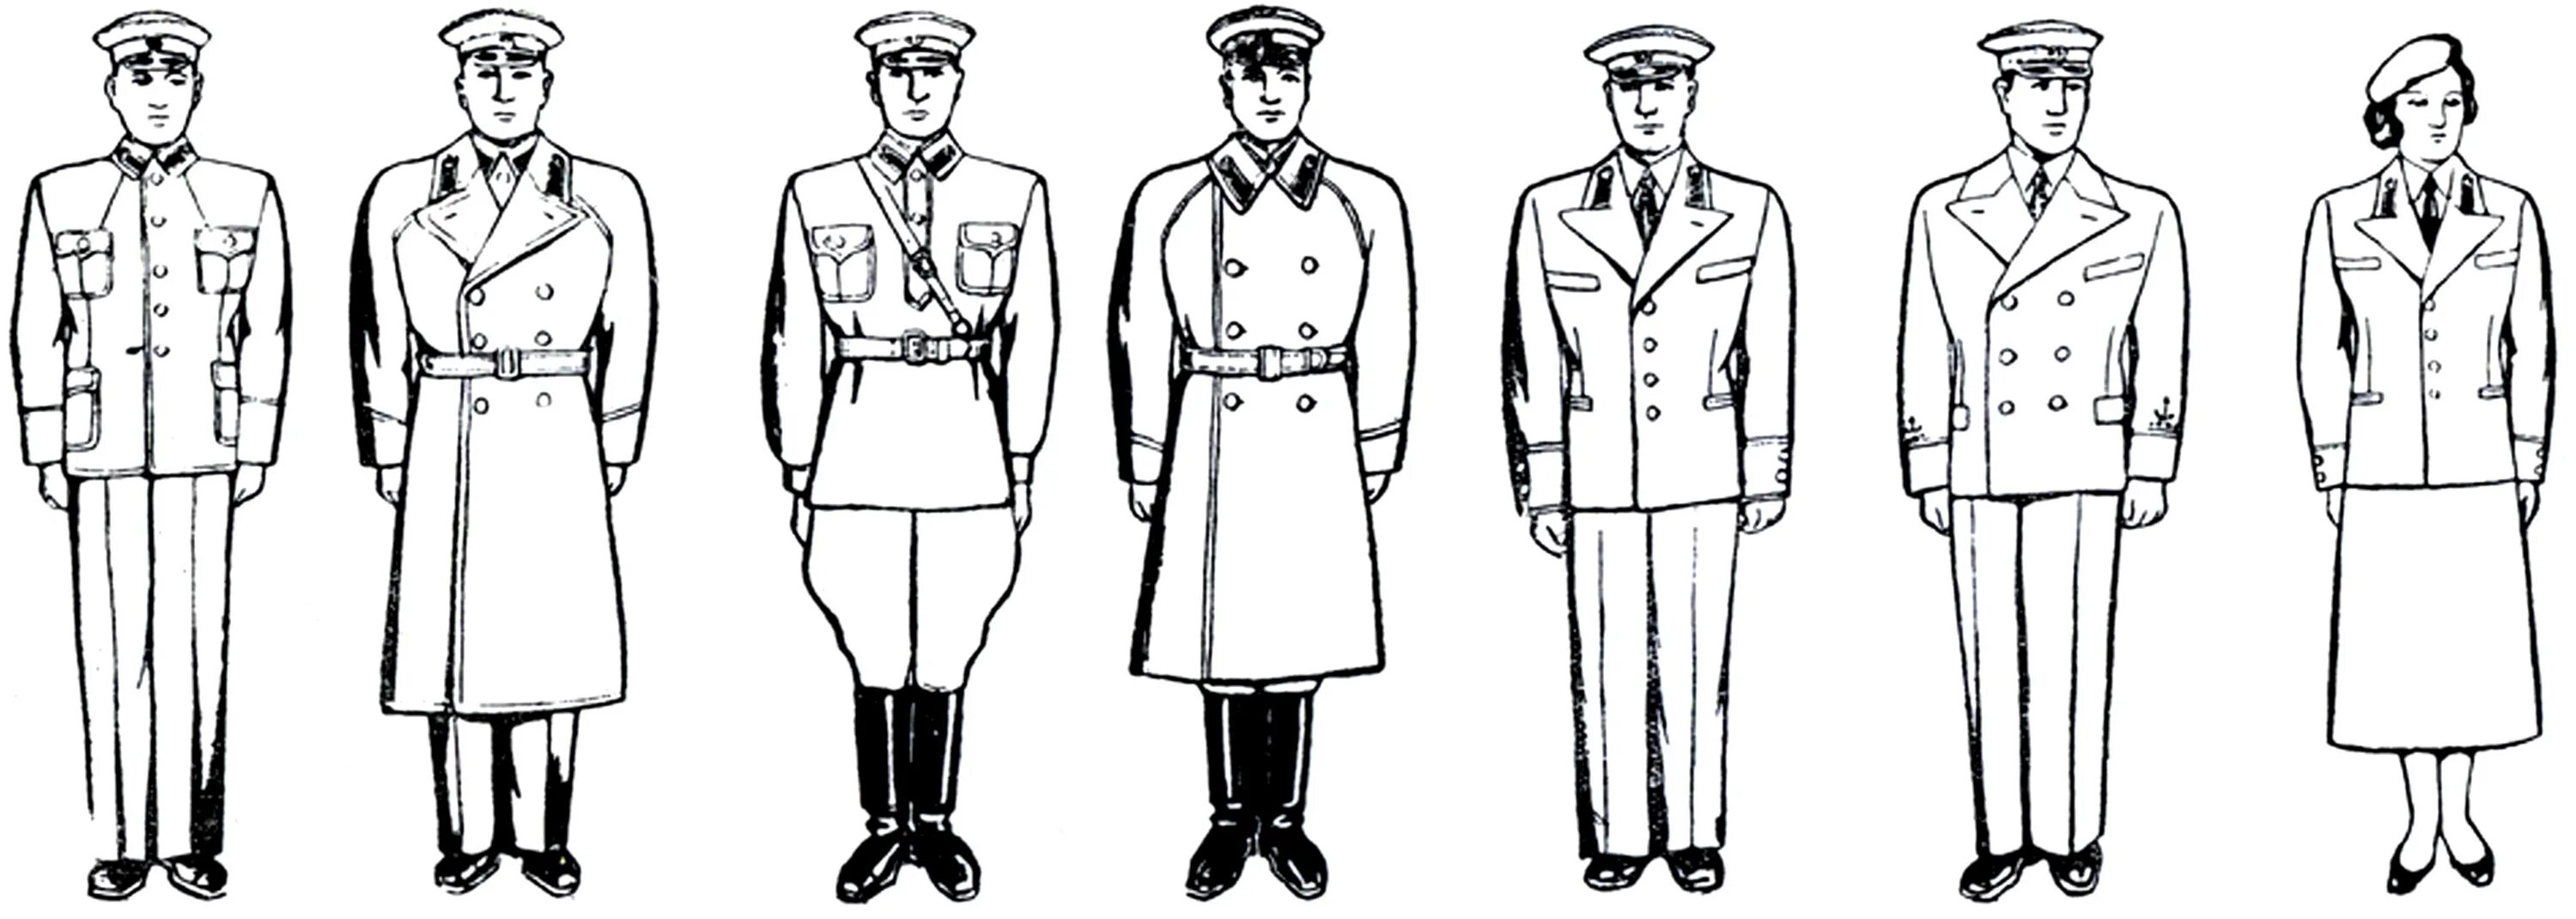 Униформа горничной авиалайнера